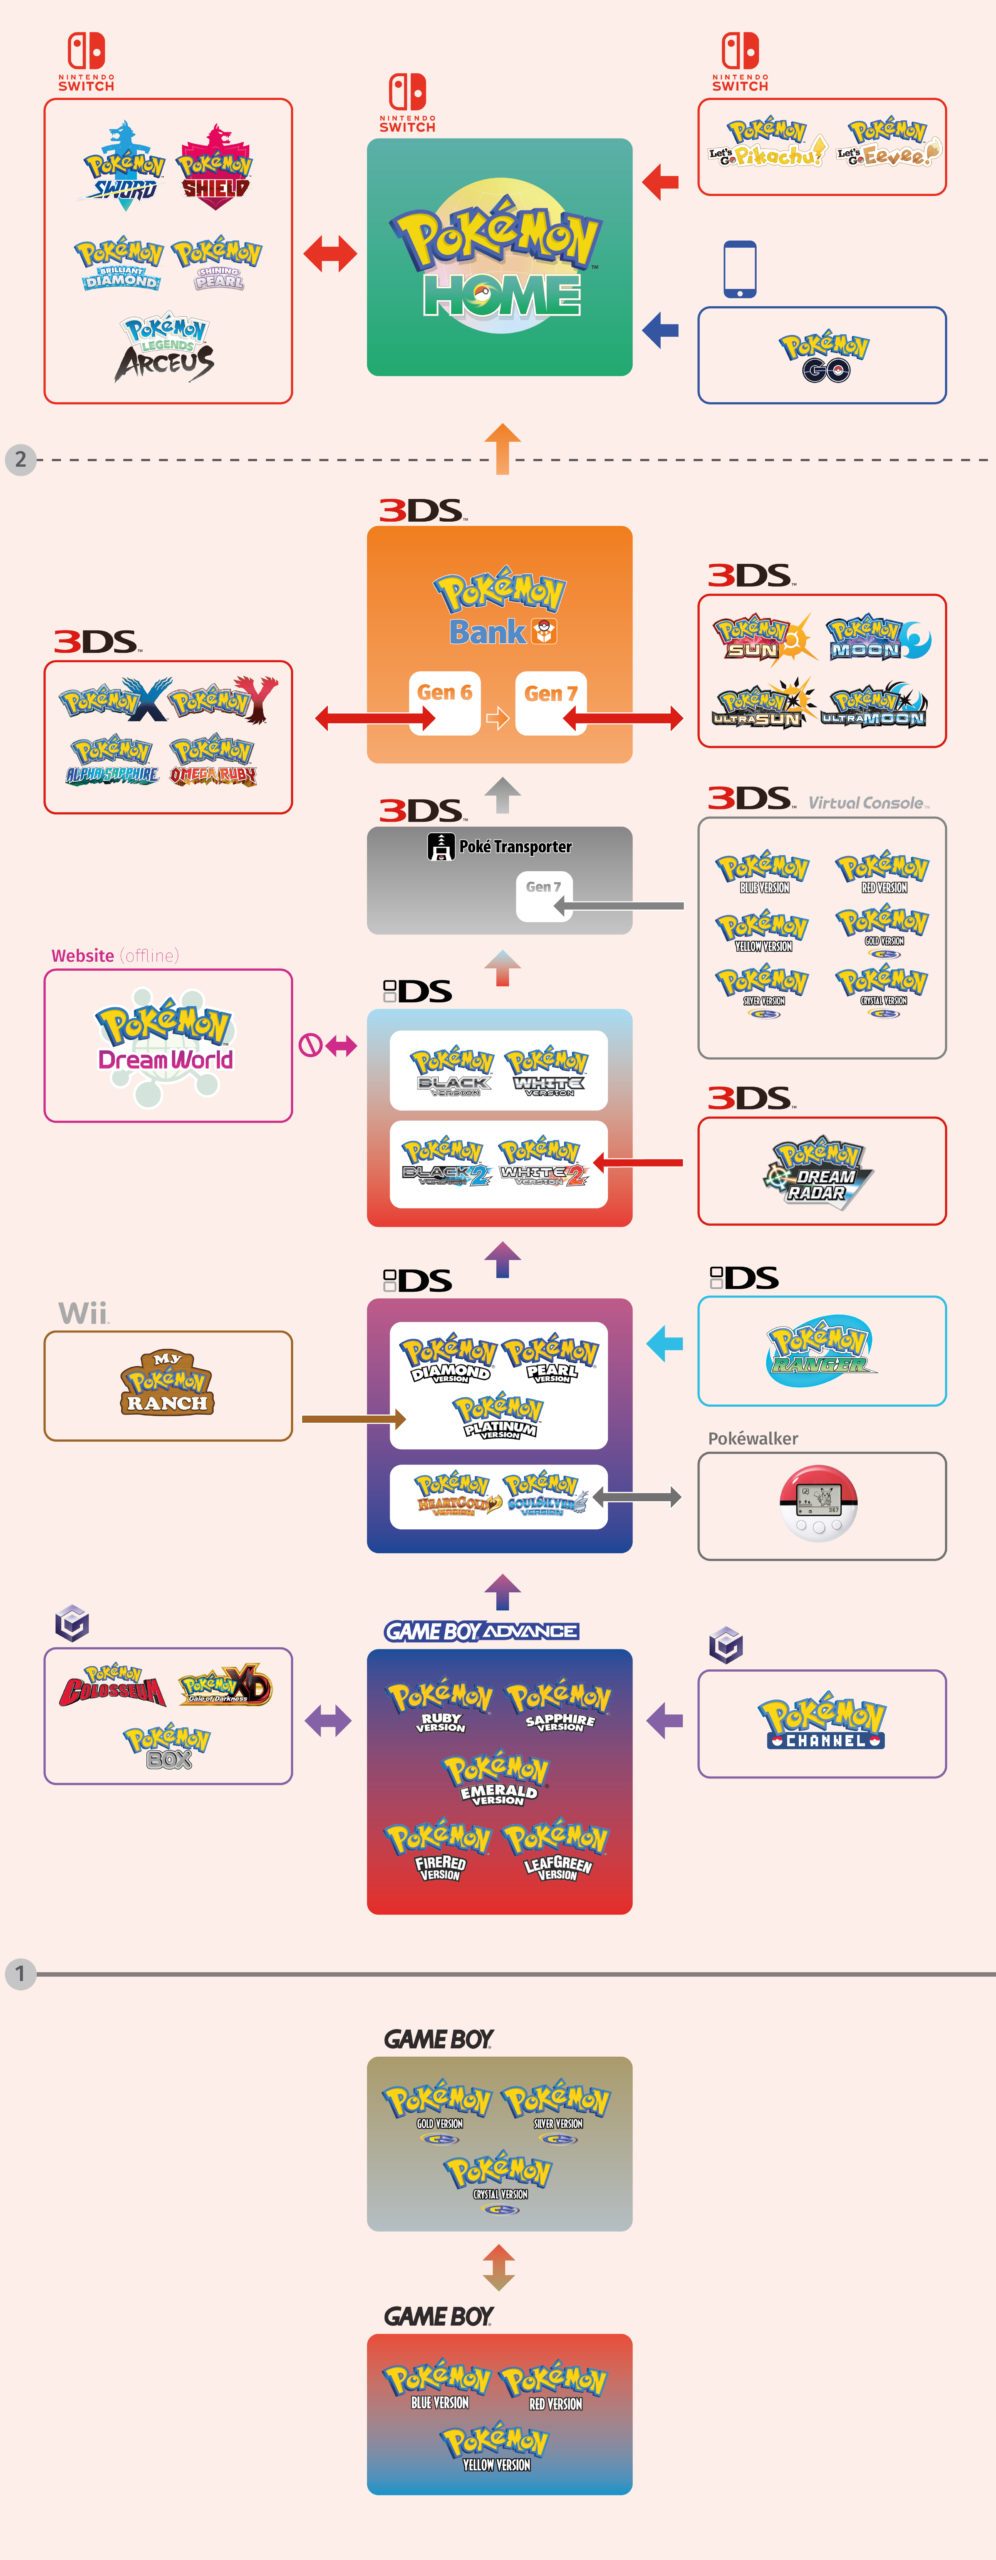 Grafik die die möglichen Transferoptionen zwischen den Pokémon Spielen zeigt